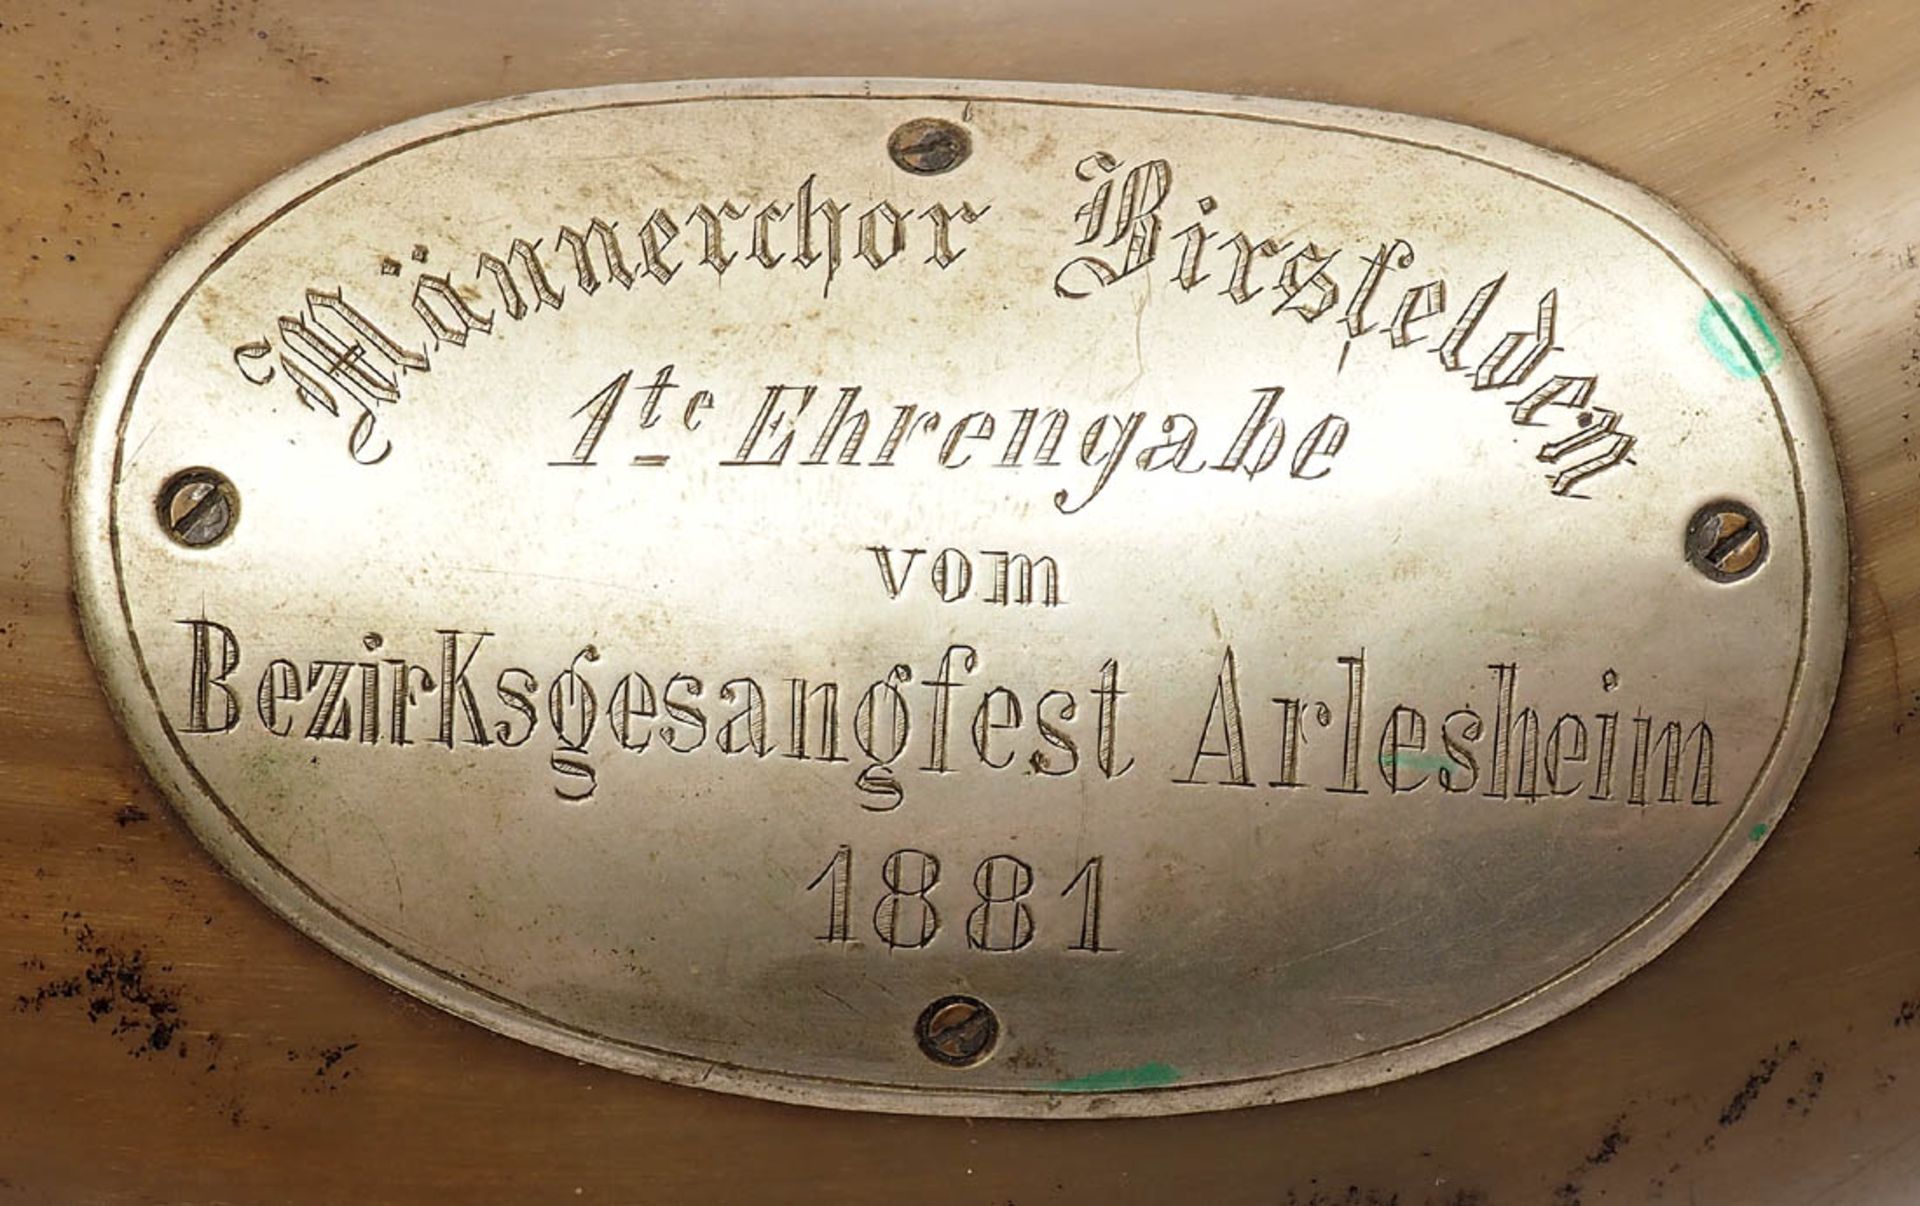 Prunkhorn Männerchor Birsfelden, erste Ehrengarde, dat. 1881. Metallbeschläge. L.41cm. - Bild 3 aus 6